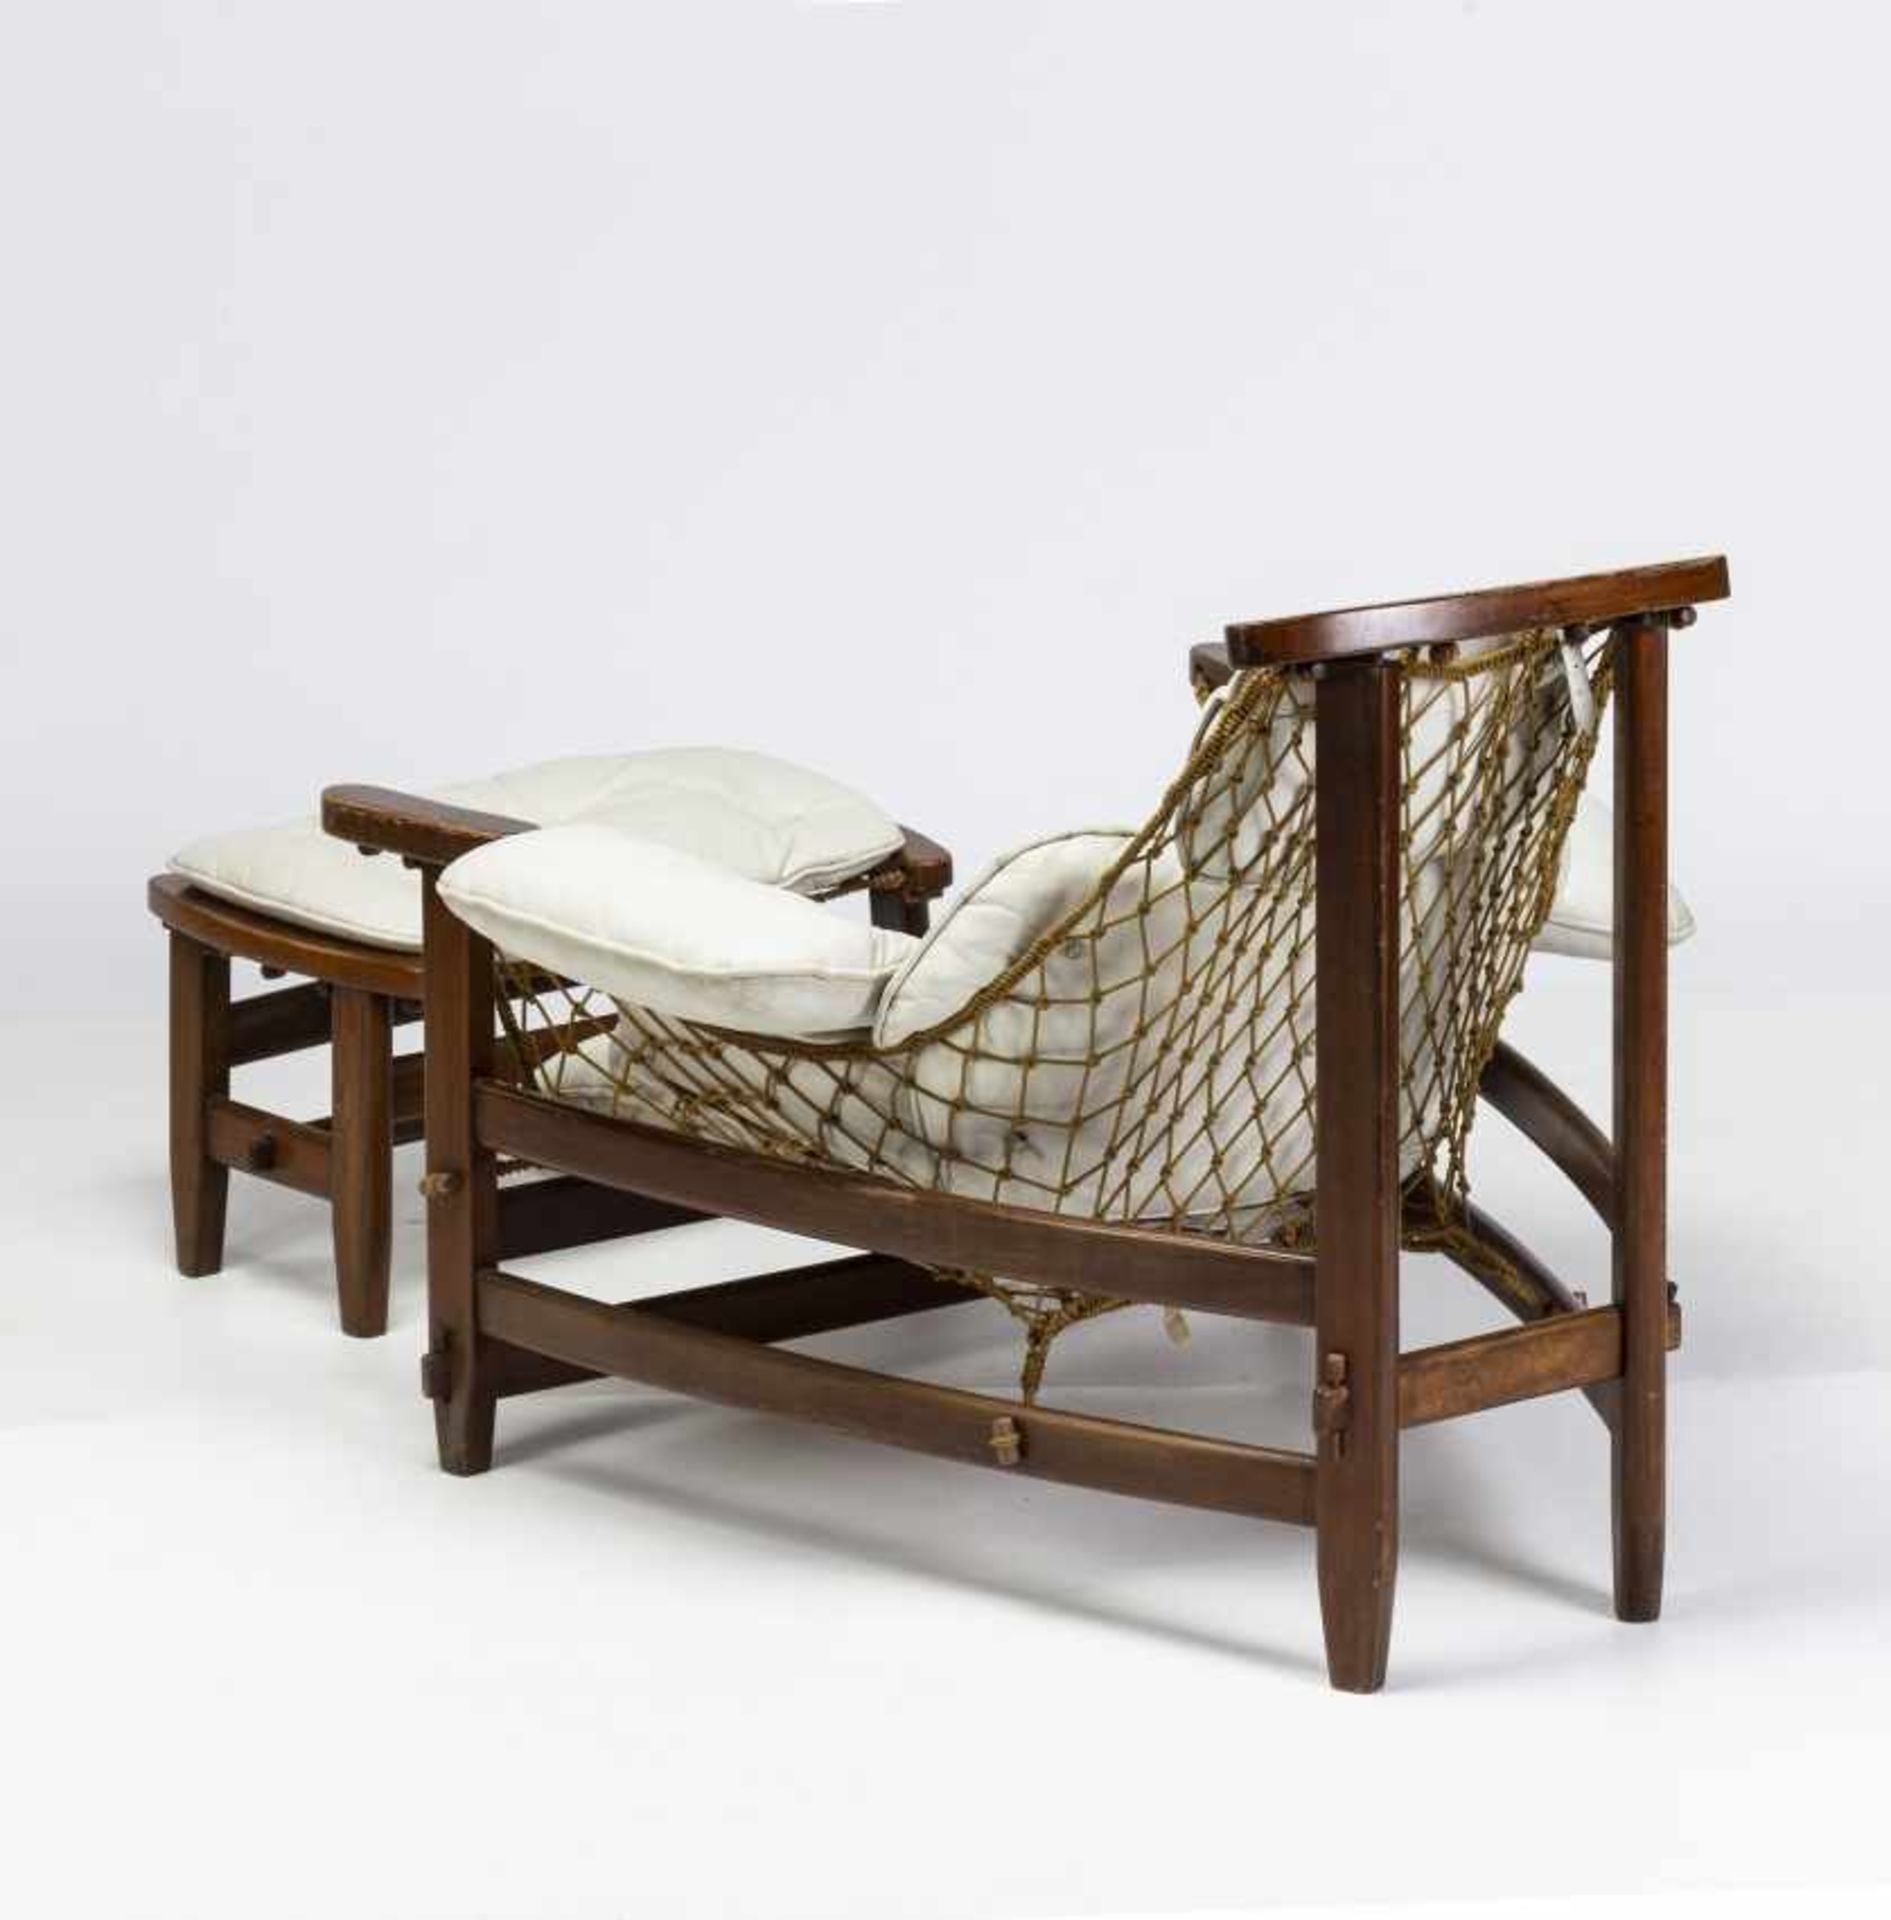 Jean Gillon, "Captain's" armchair with ottoman, Rosewood, sJean GillonIasi, 1919 - Sao Paulo, 2007" - Bild 7 aus 8